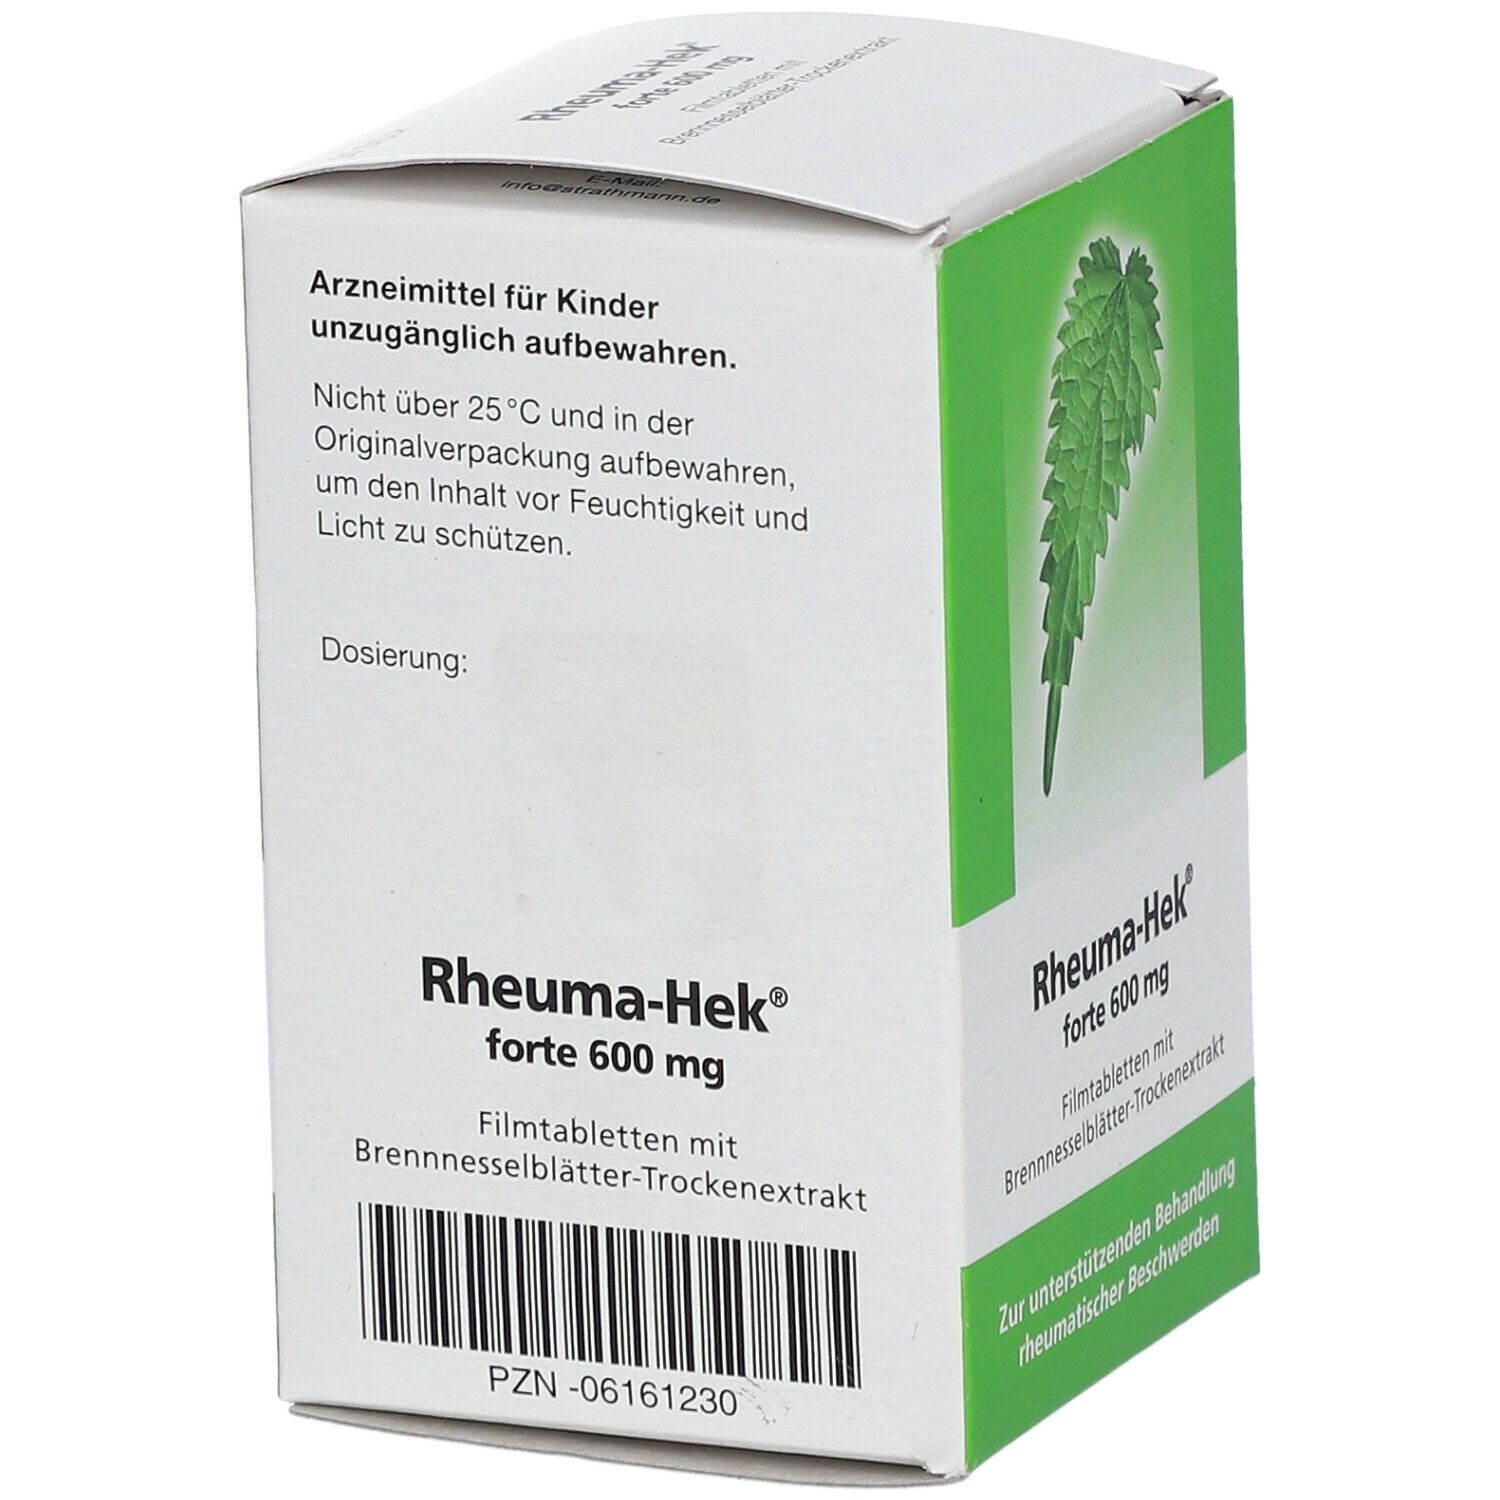 Rheuma-Hek® forte 600 mg